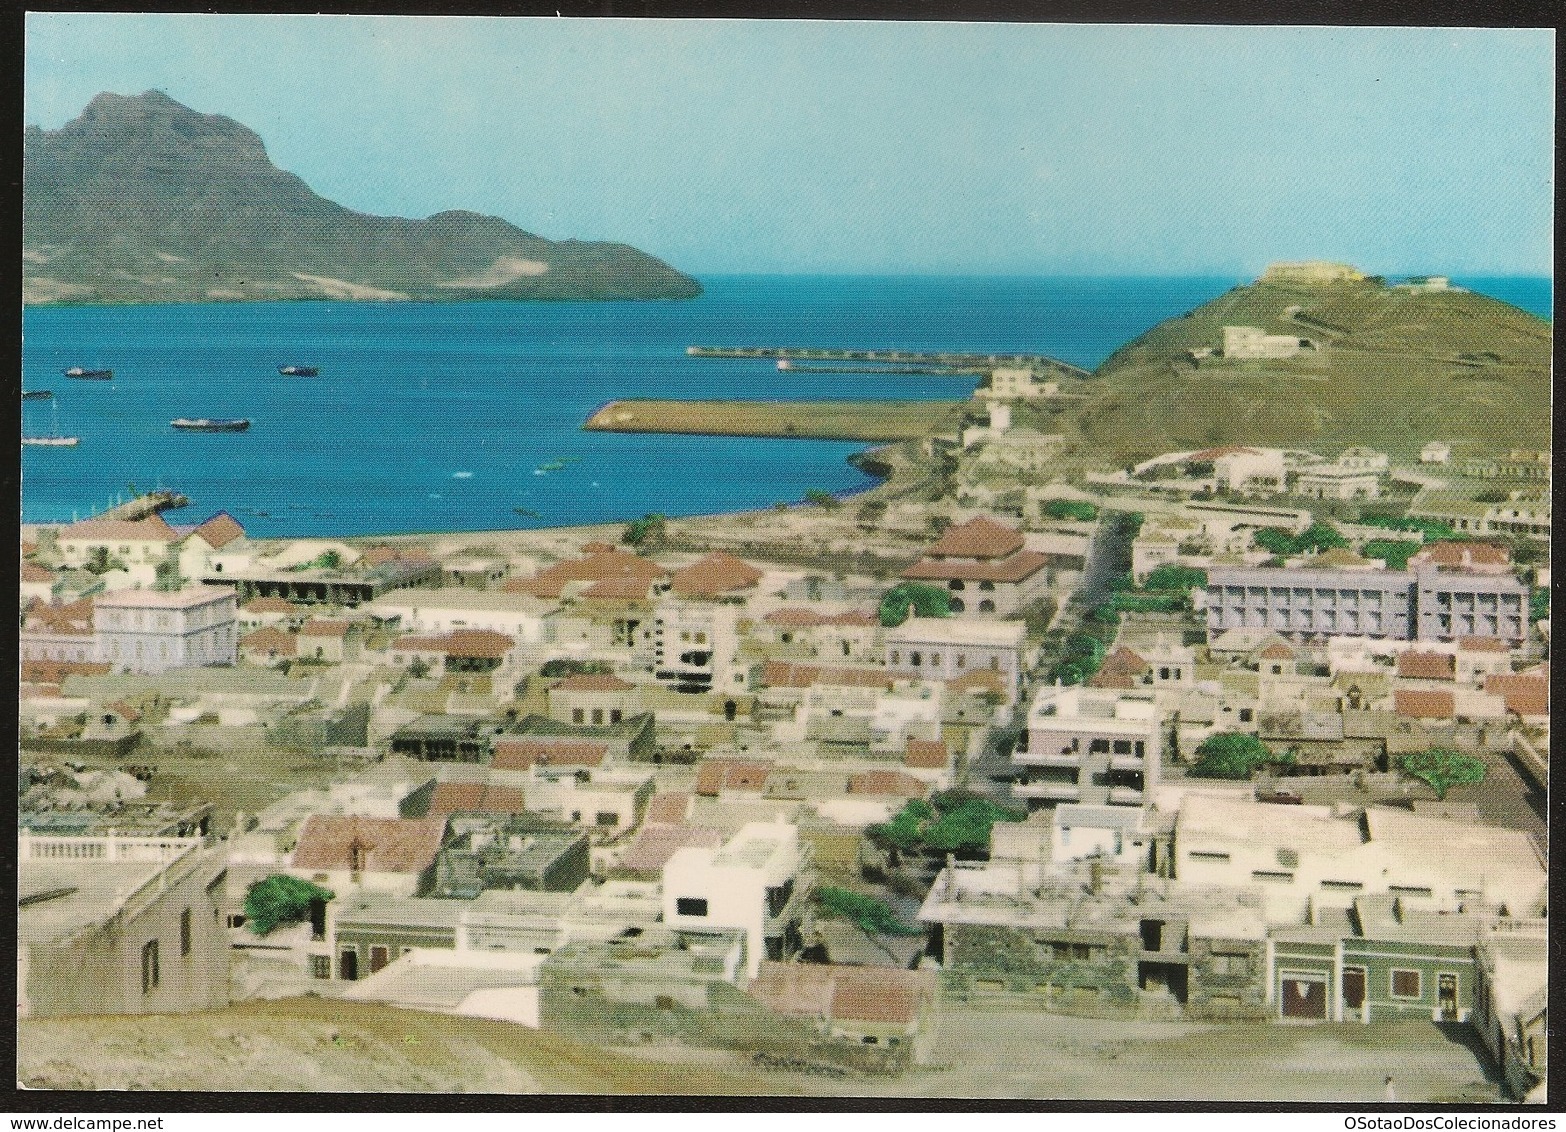 Postal Cabo Verde - Cape Verde - Ilha De S. Vicente - Cidade Do Mindelo - Vista Parcial Da Cidade E Porto - Postcard - Cap Vert